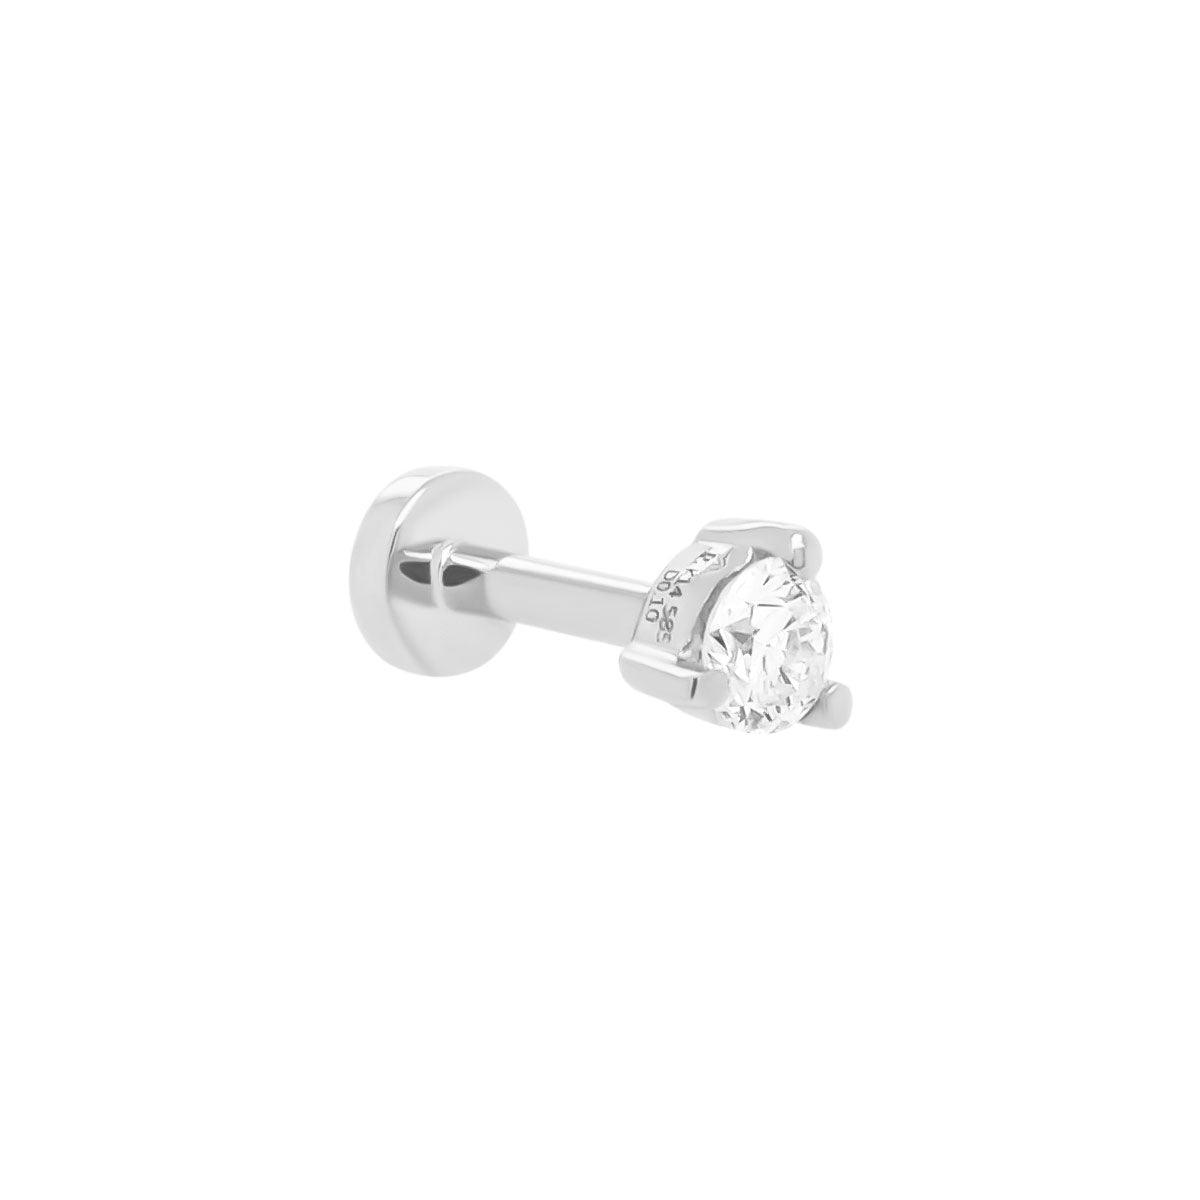 https://porterlyons.com/cdn/shop/products/3mm-diamond-earring-wg.jpg?v=1652911838